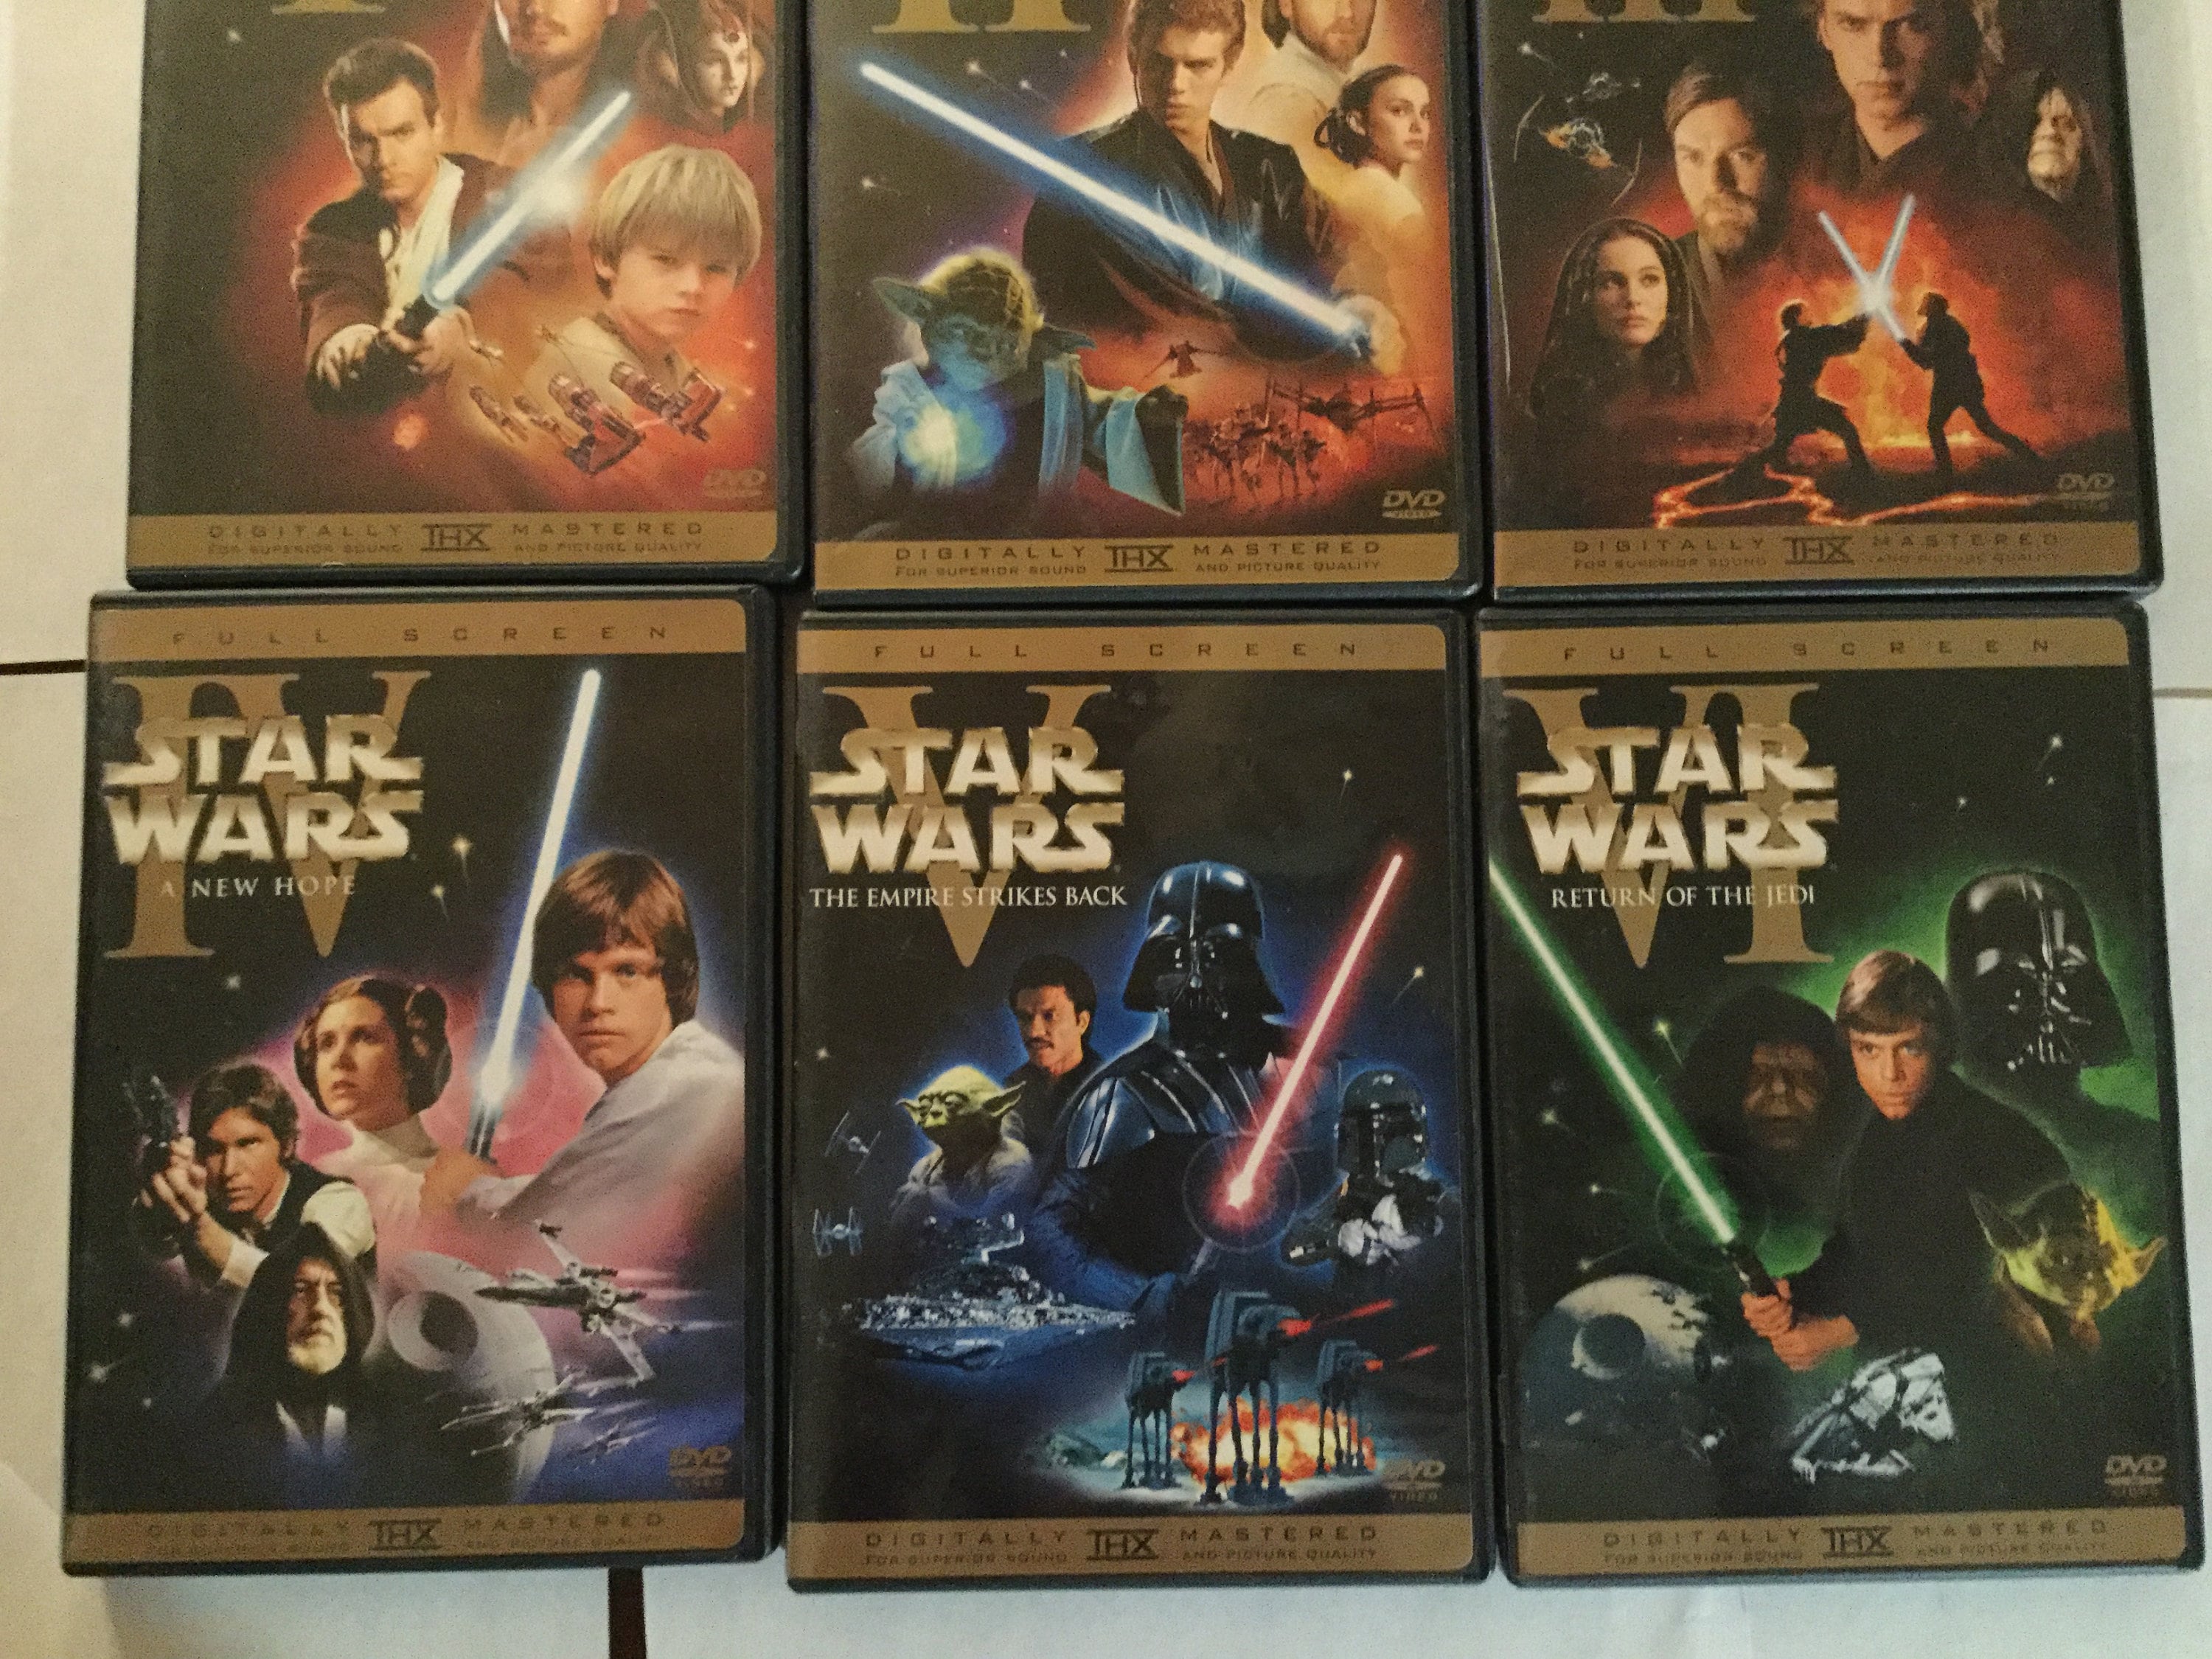 Star Wars Dvd Collection alle 6 Dvds 1-6 Trilogie und | Etsy